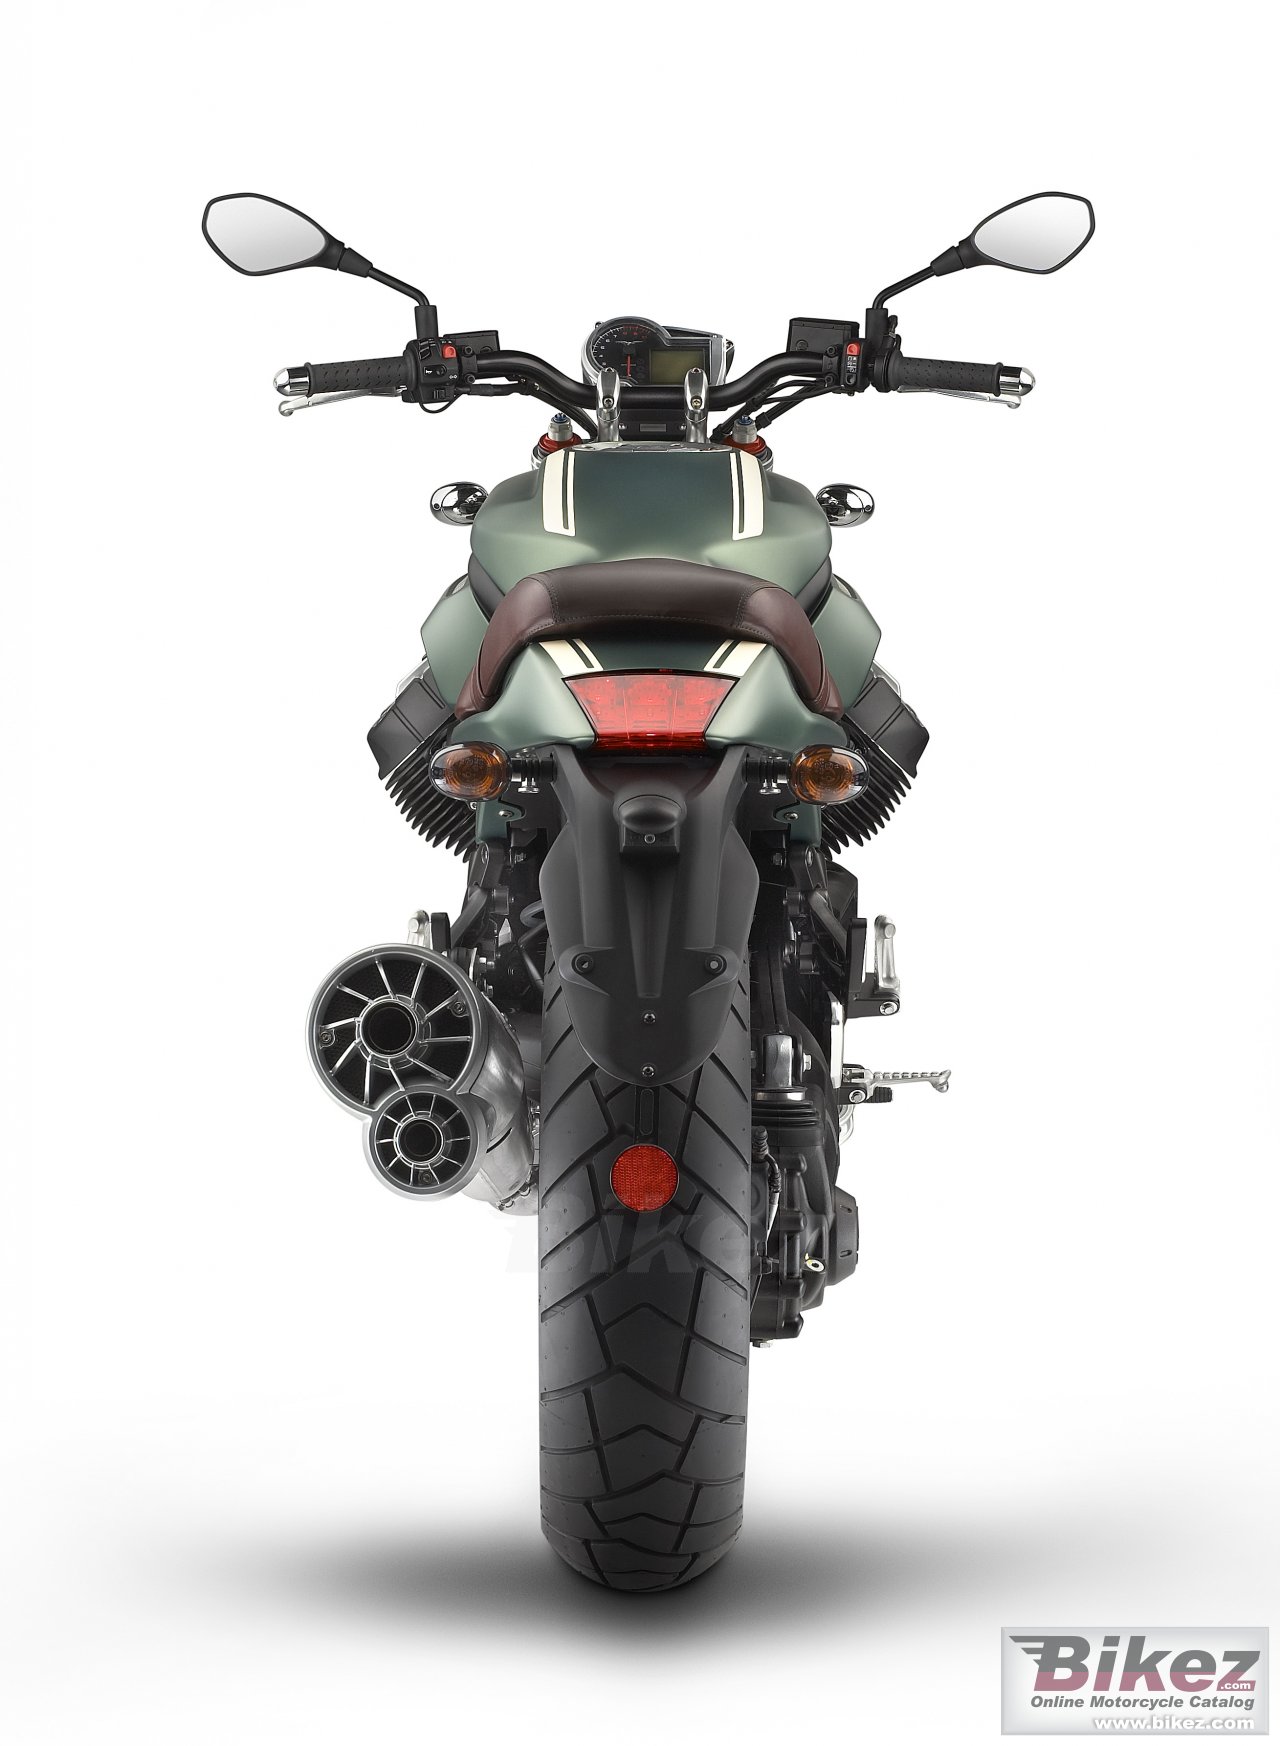 Moto Guzzi Griso 8V Special Edition